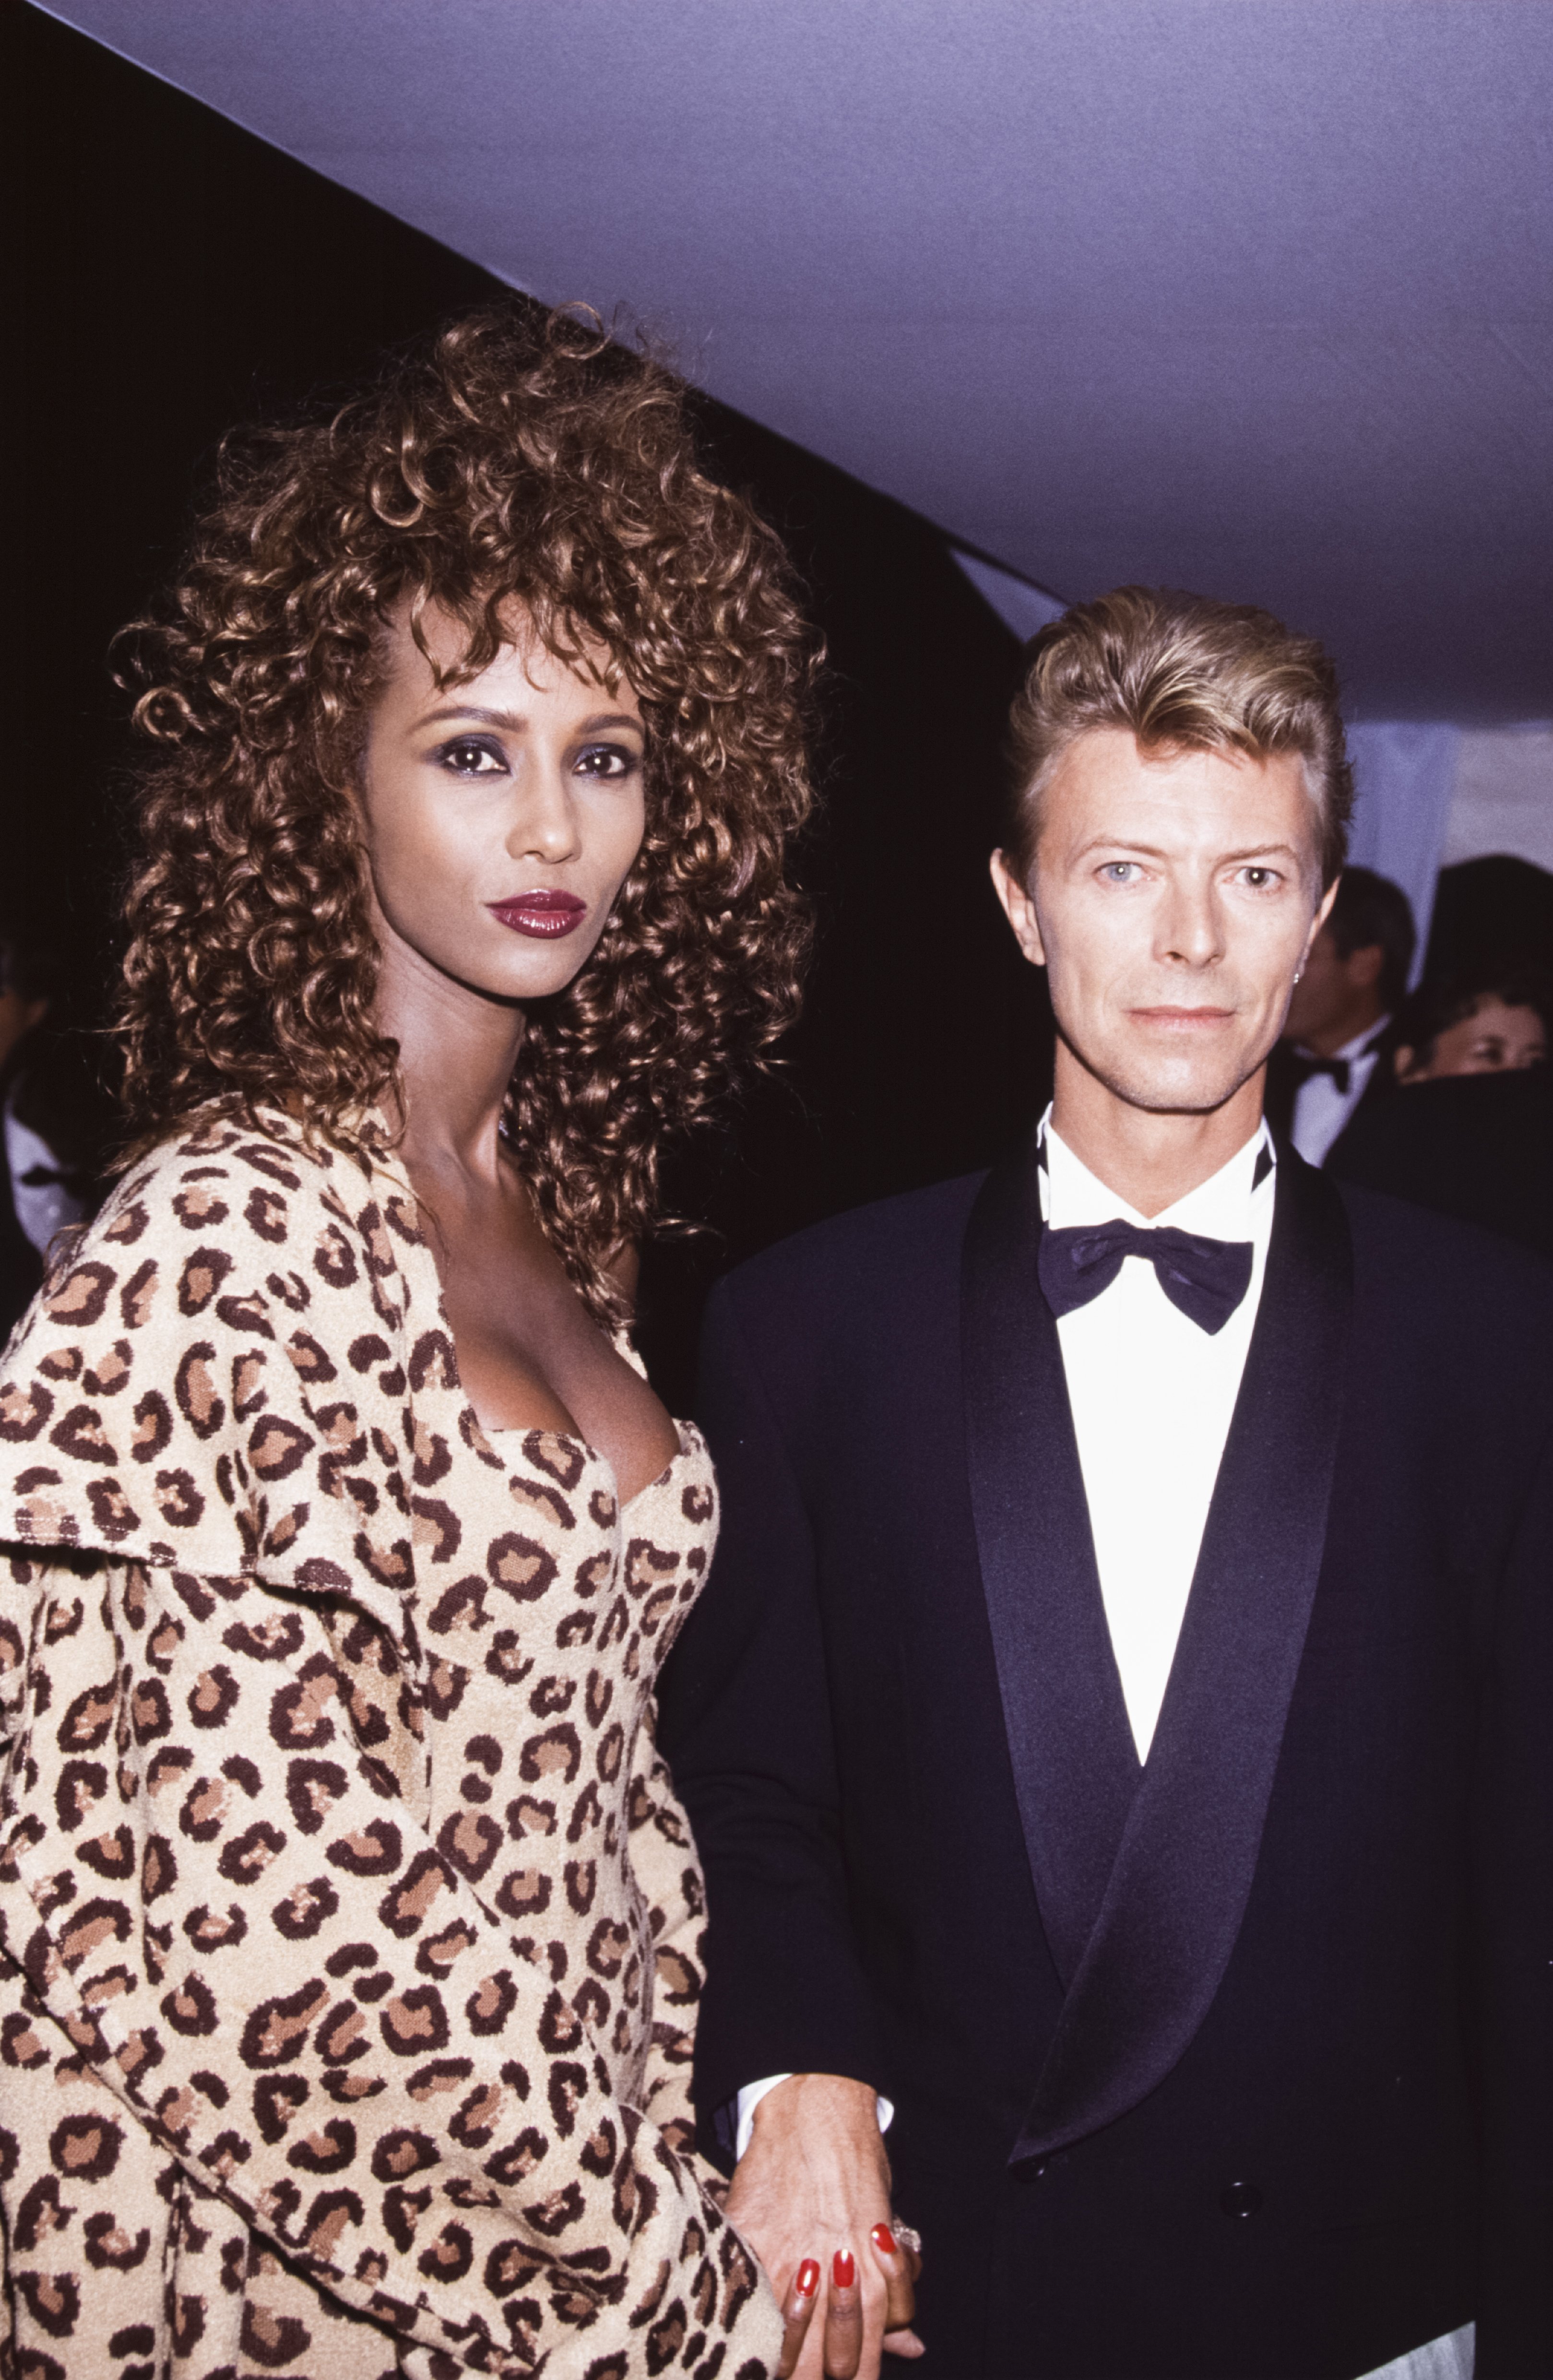 David Bowie avec sa femme Iman en septembre 1991 à Versailles, France | Source : Getty Images